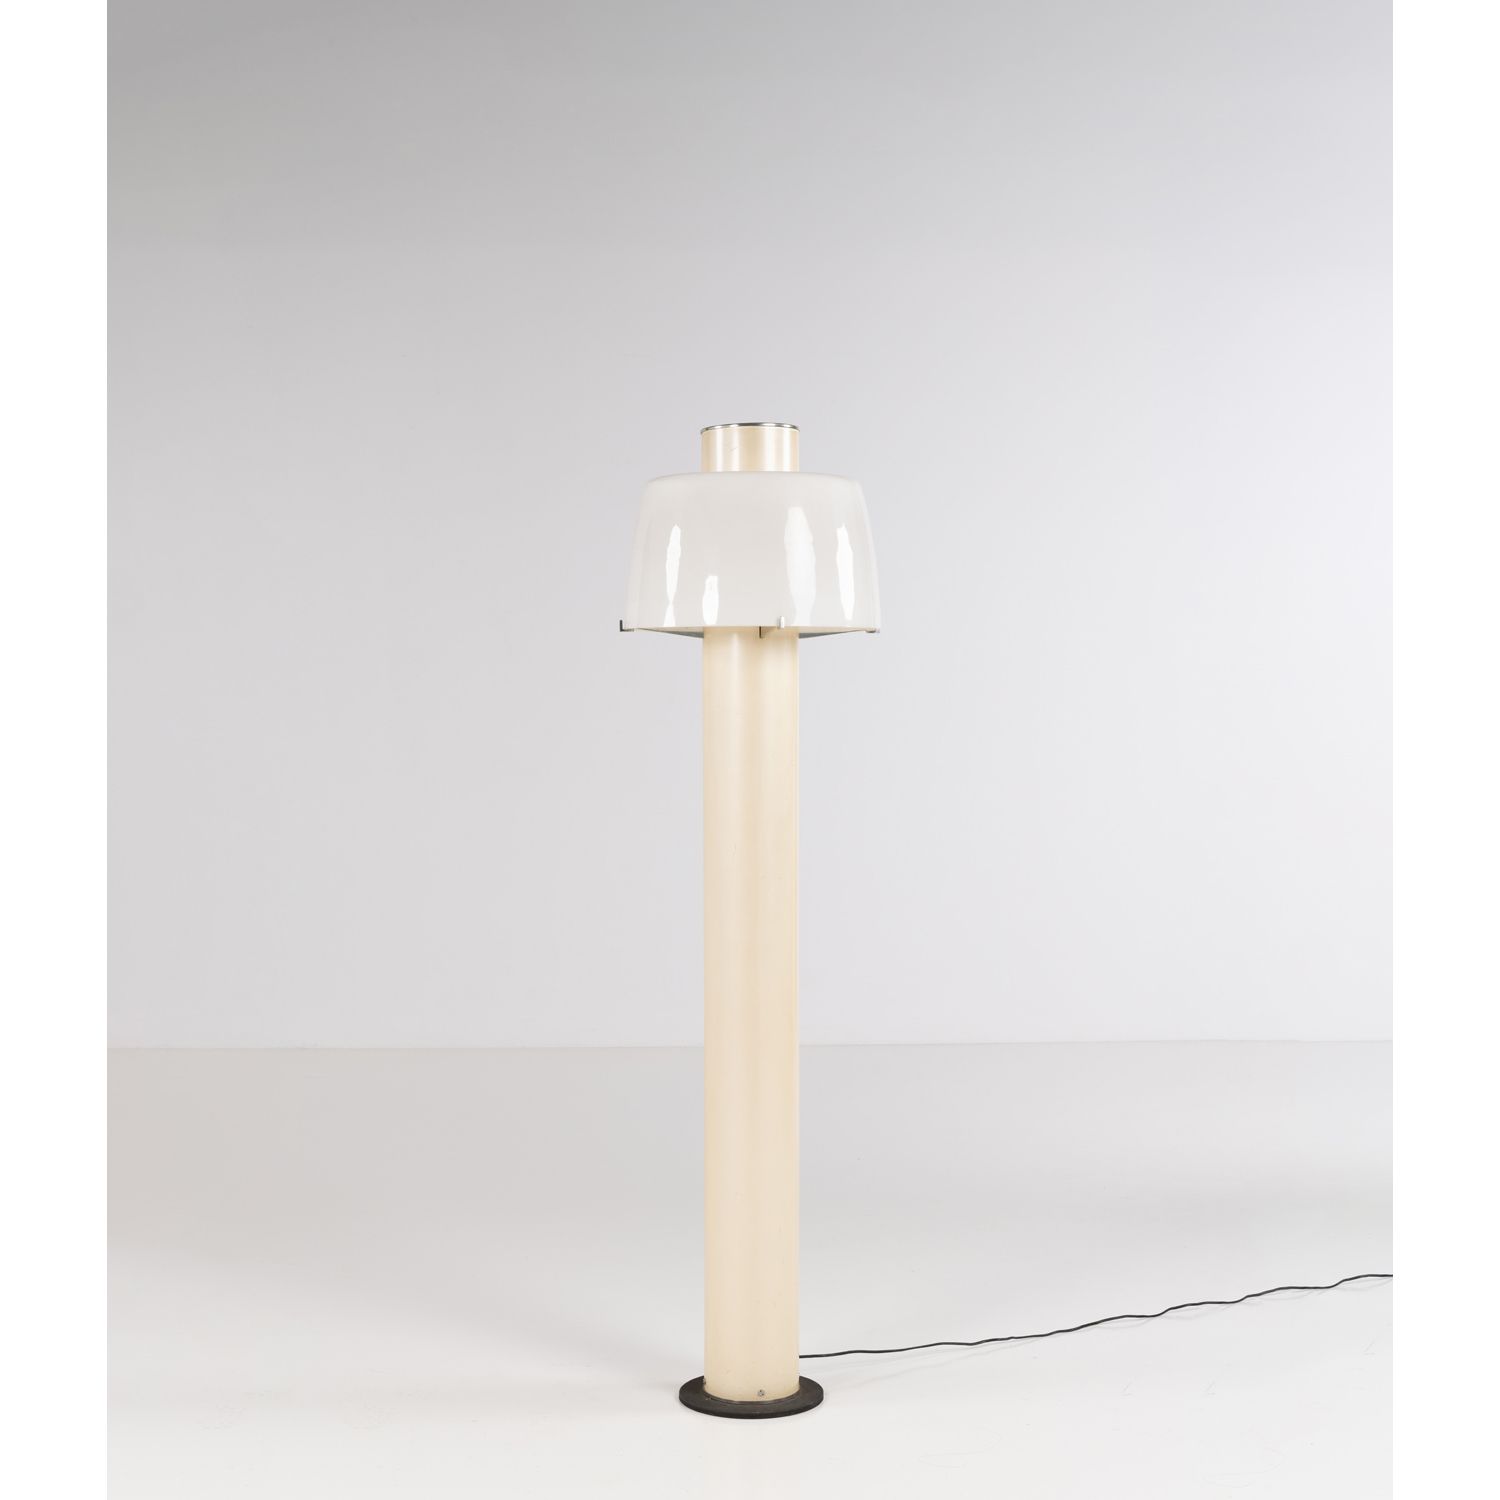 Null Gino Sarfatti (1912-1985)

Model n° 1006

Floor lamp

Cast aluminum, alumin&hellip;